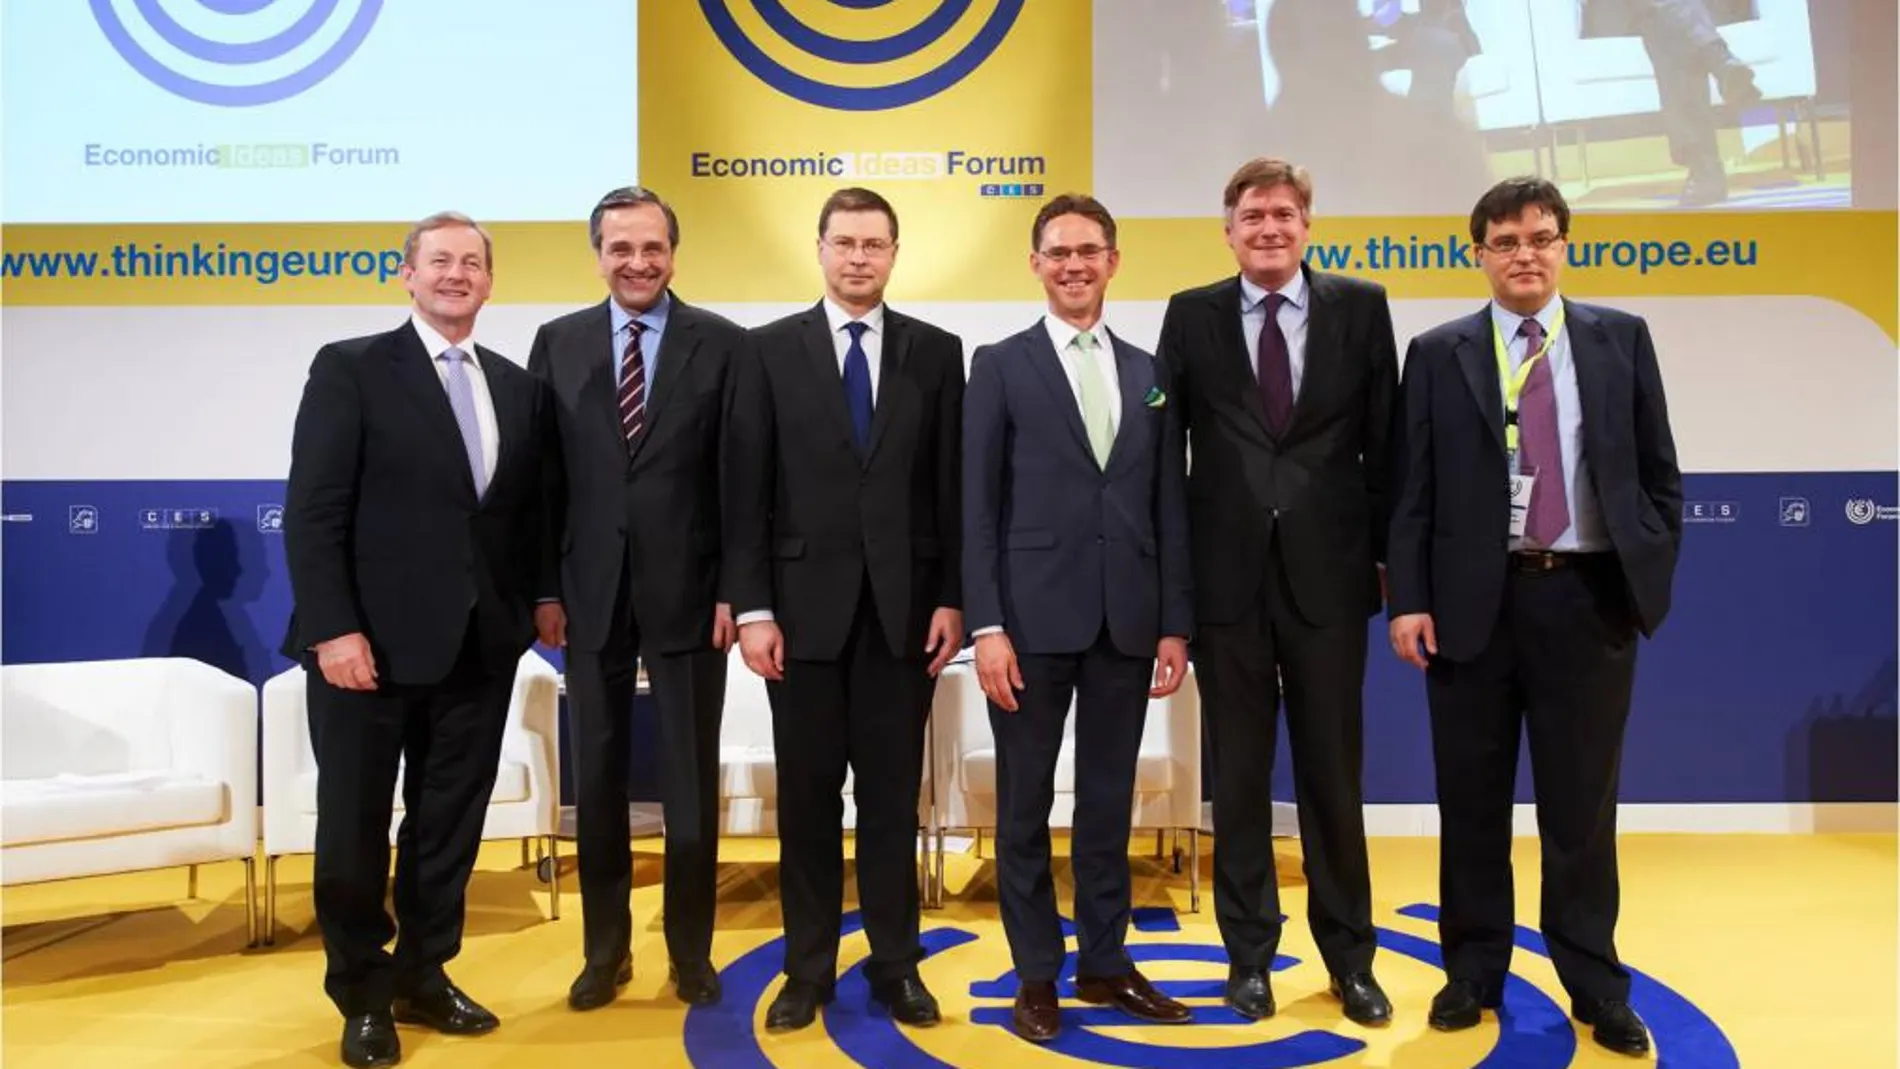 De izquierda a derecha, el Primer Ministro de Irlanda, Enda Kenny; de Grecia, Antonis Samaras; de Letonia, Valdis Dombrovskis; y de Finlandia, Jyrki Katainen; el Secretario General del PPE, Antonio López-Istúriz; y el Director del CES, Tomi Huhtanen